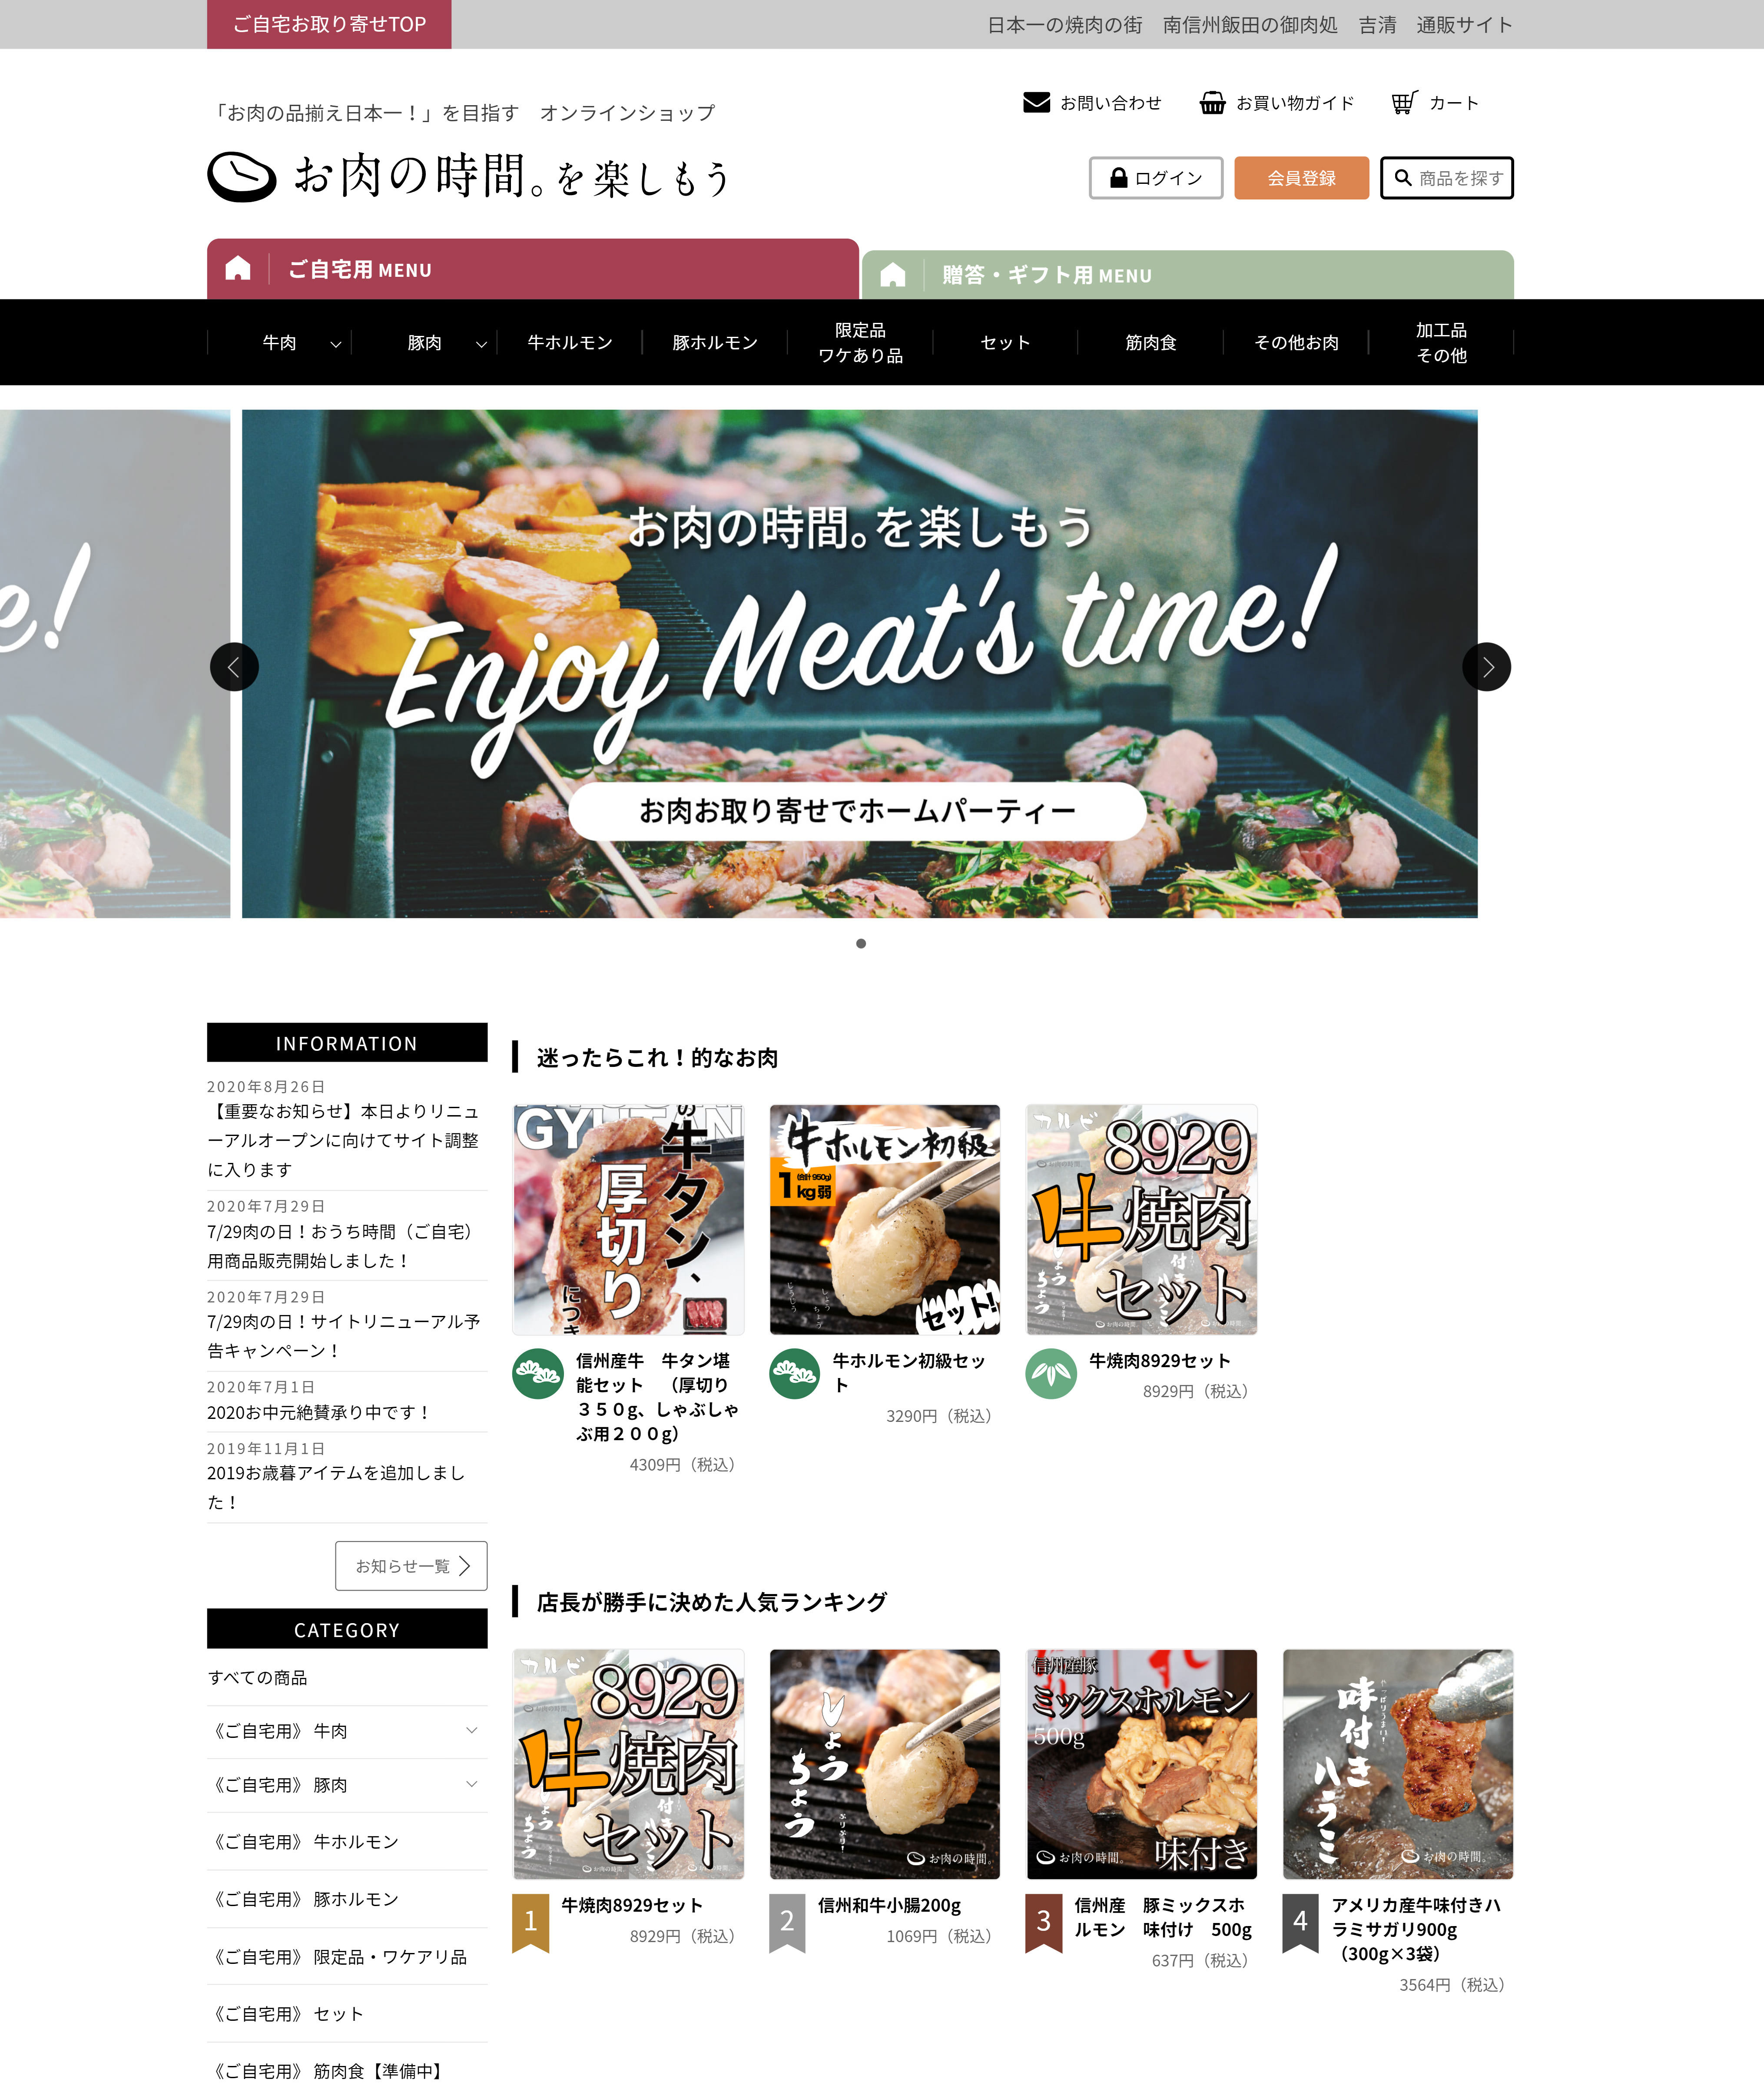 ECサイト「お肉の時間。」を焼肉の日“8月29日”にリニューアル！
お肉の品揃え日本一を目指し、焼肉の街から全国へお肉をお届け